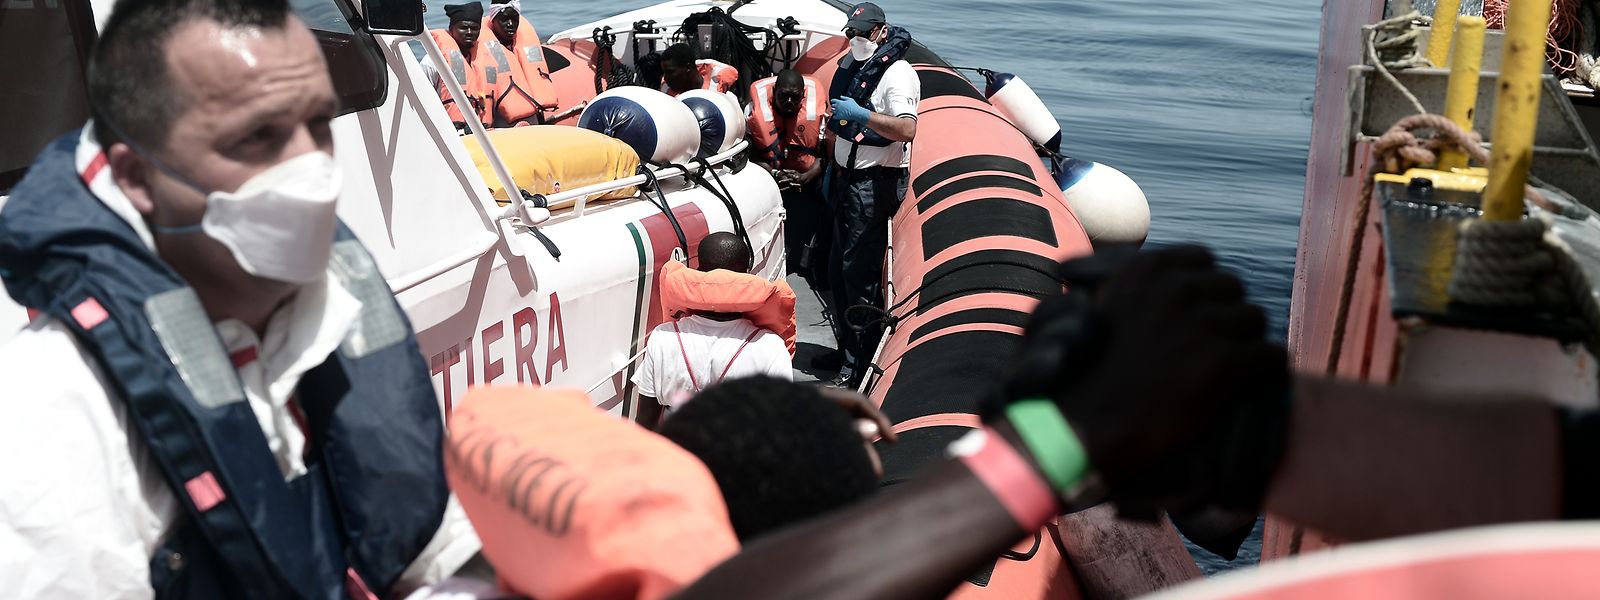 Am Dienstag begann der aufwendige Transfer von 400 Menschen von der „Aquarius“ auf zwei Schiffe der italienischen Küstenwache und der Marine.